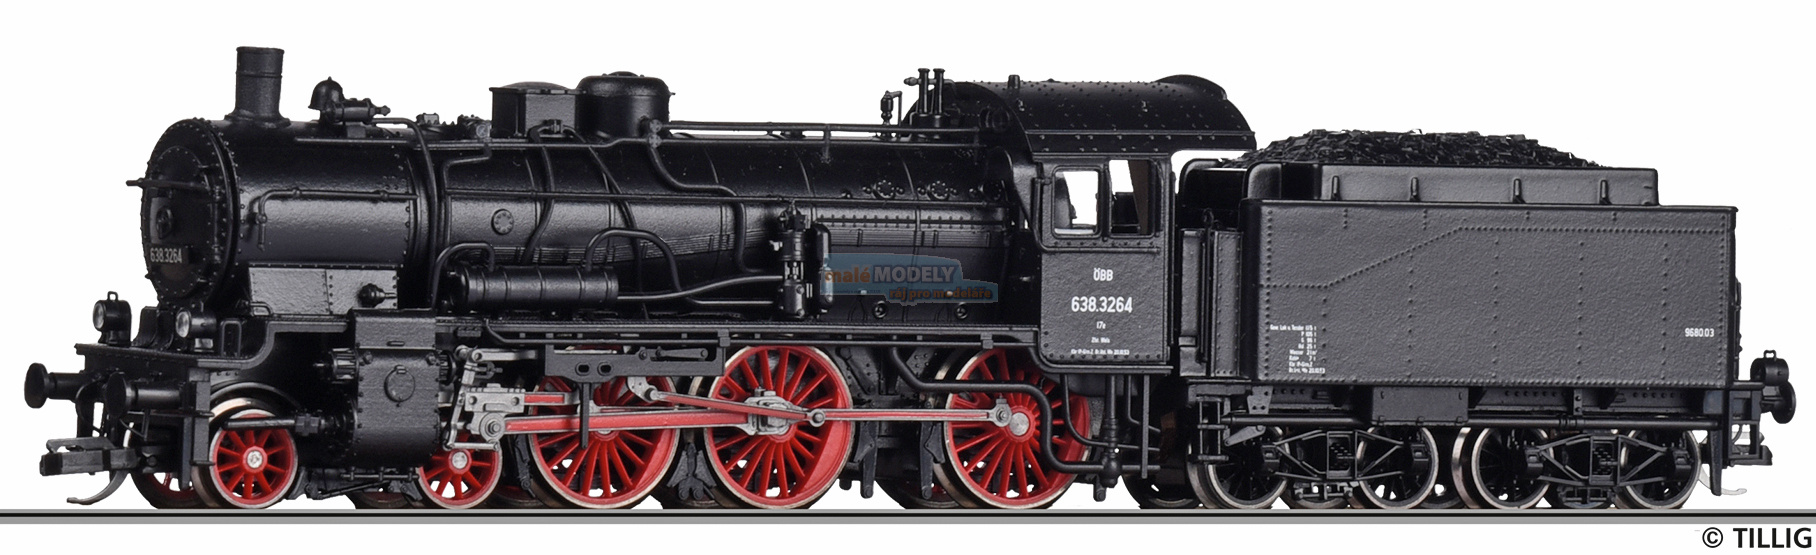 Parní lokomotiva řady 638 